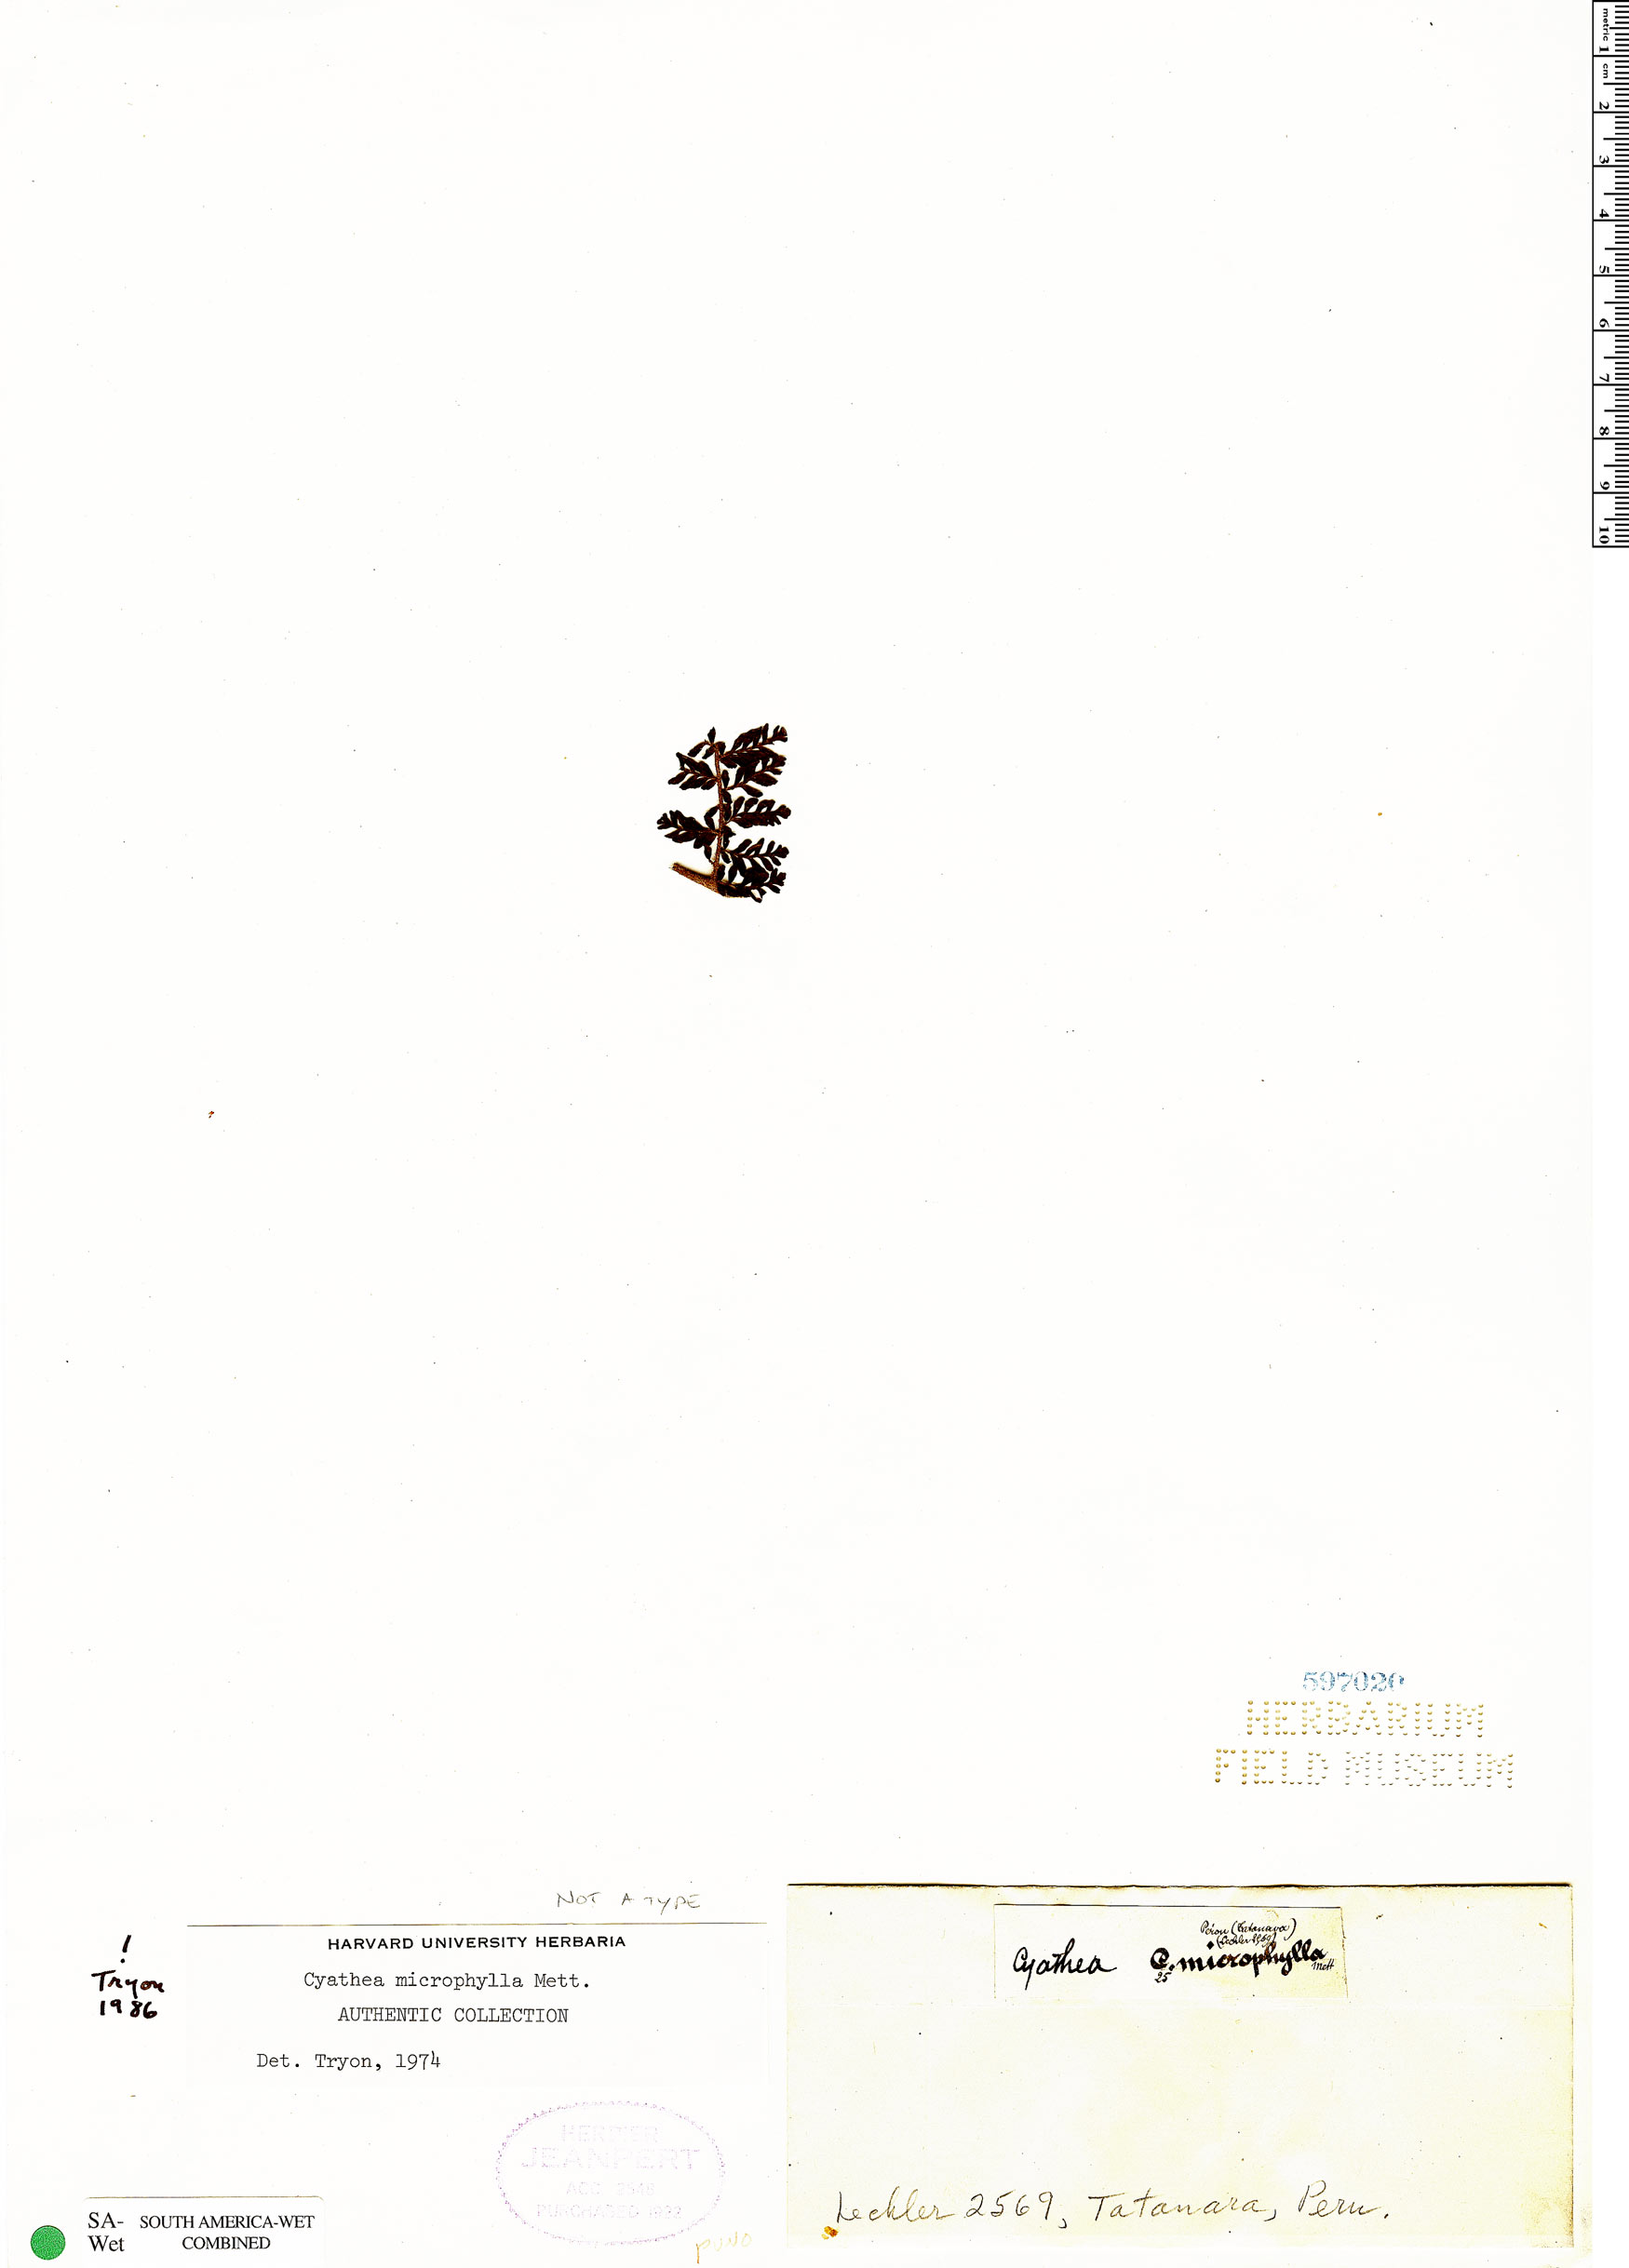 Cyathea microphylla image